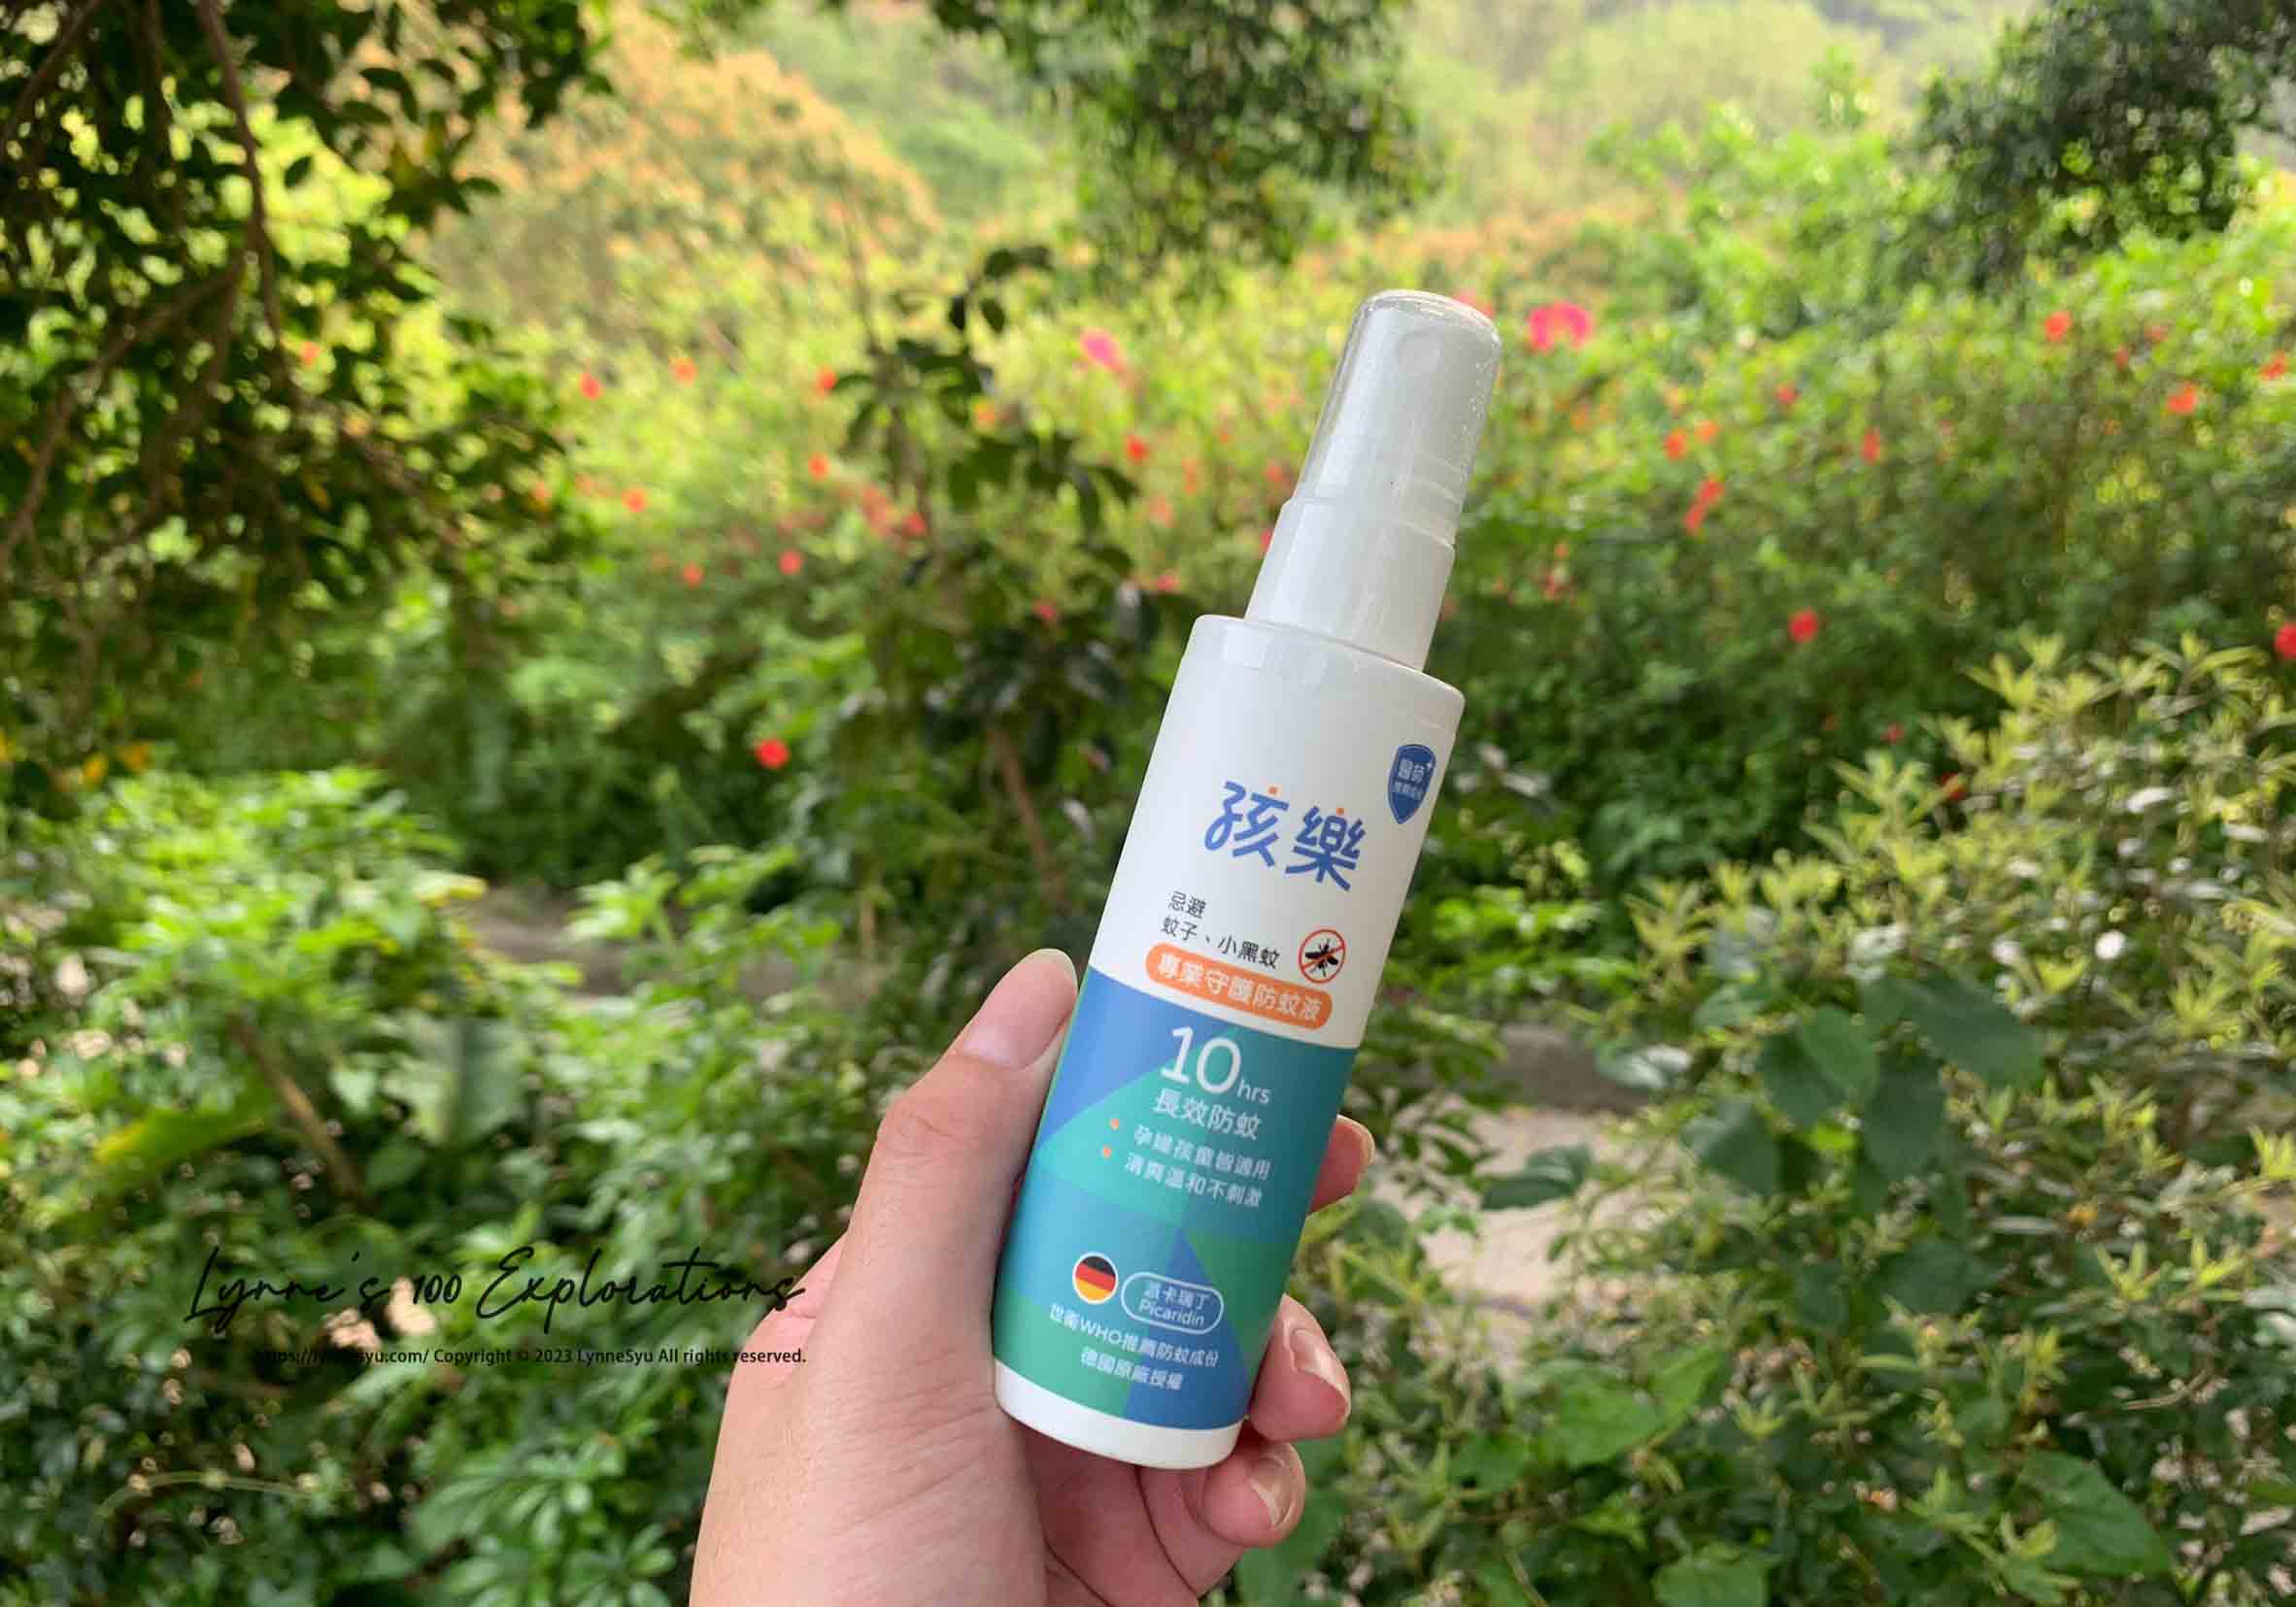 一個藍白瓶身的防蚊液，包裝上品牌是孩樂，品名是專業守護防蚊液